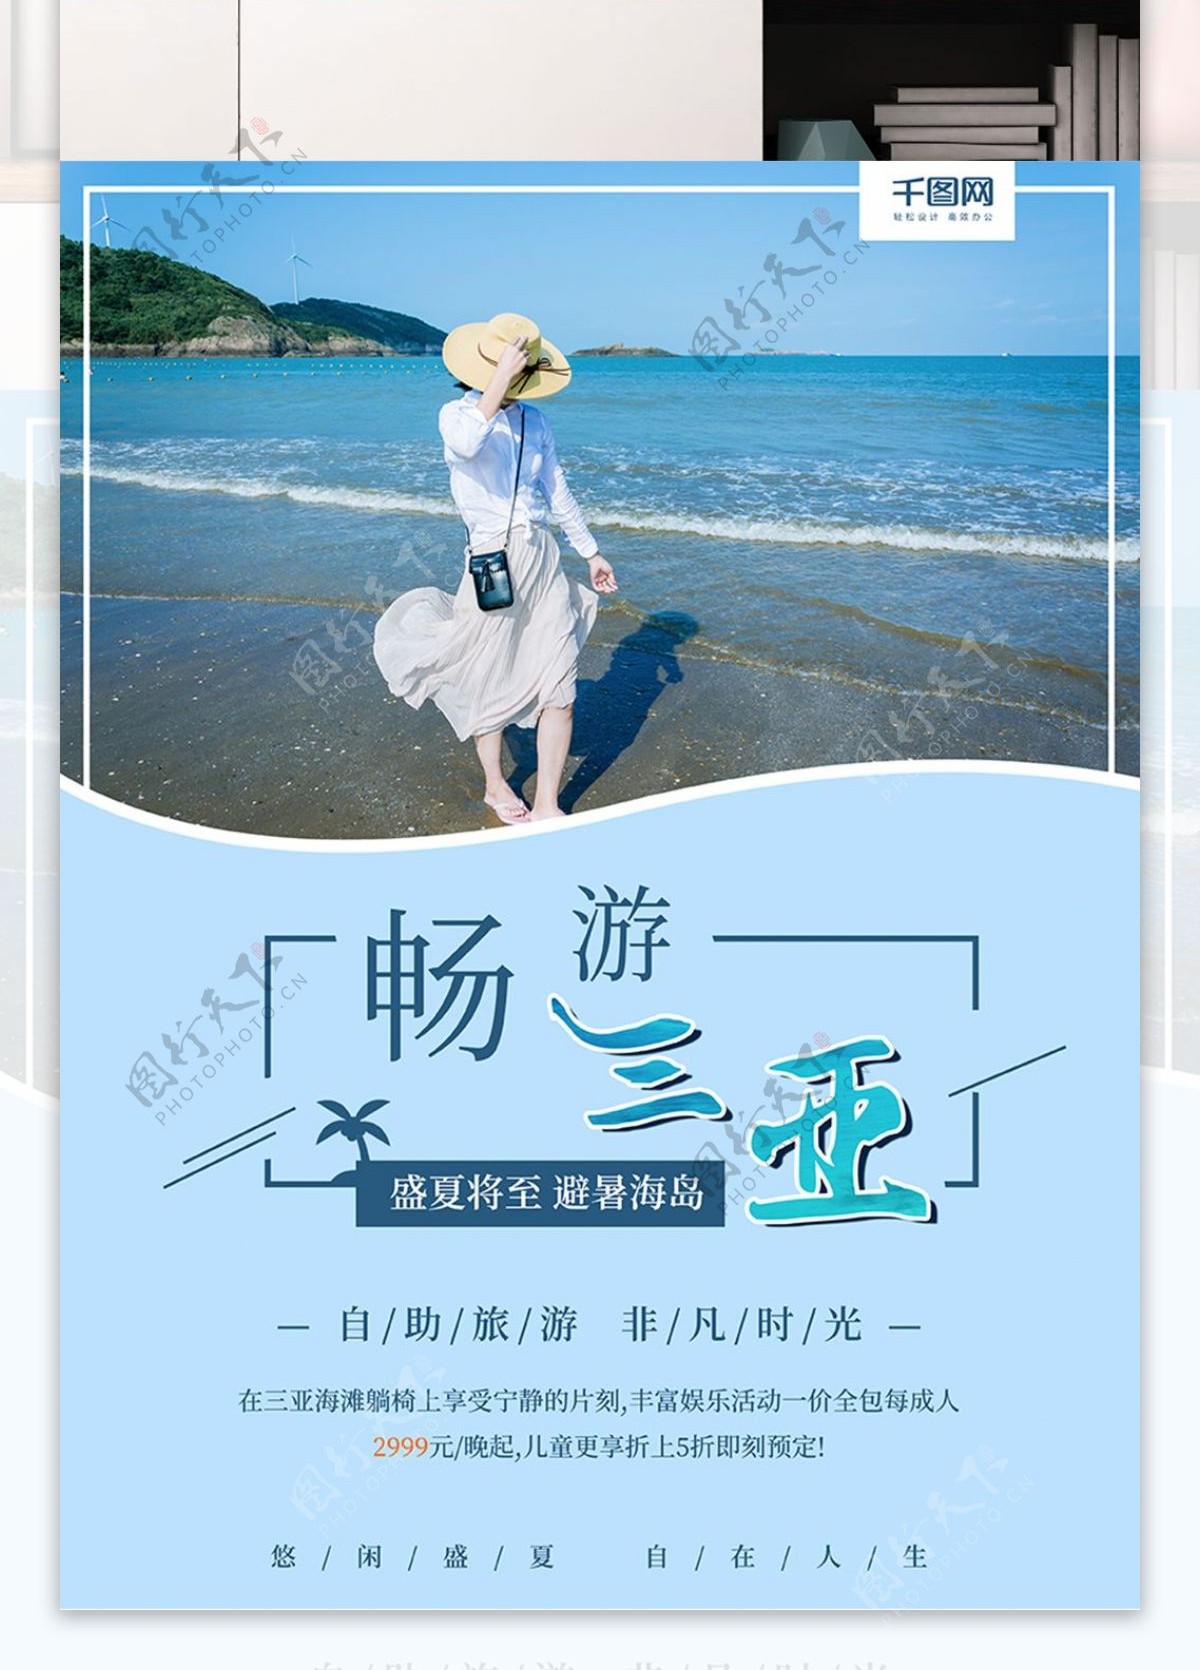 海南三亚度假旅游旅行社促销宣传海报